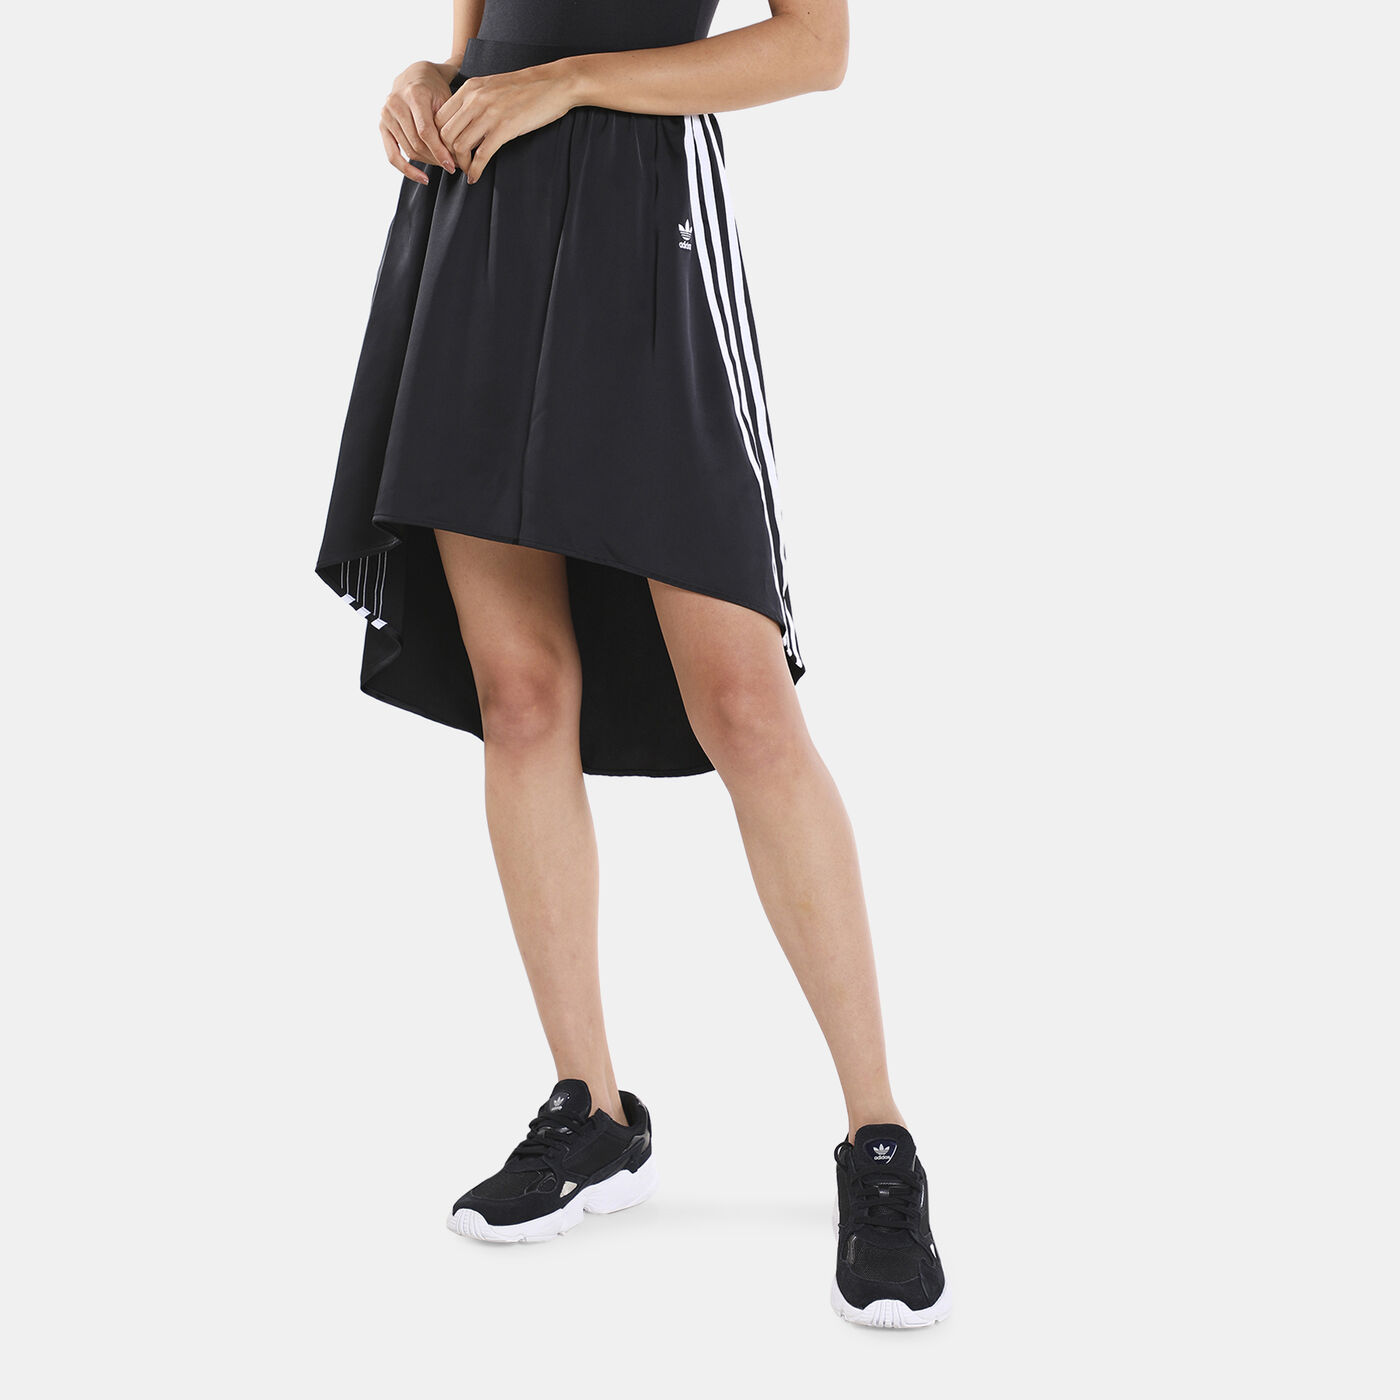 Women's Satin Skirt